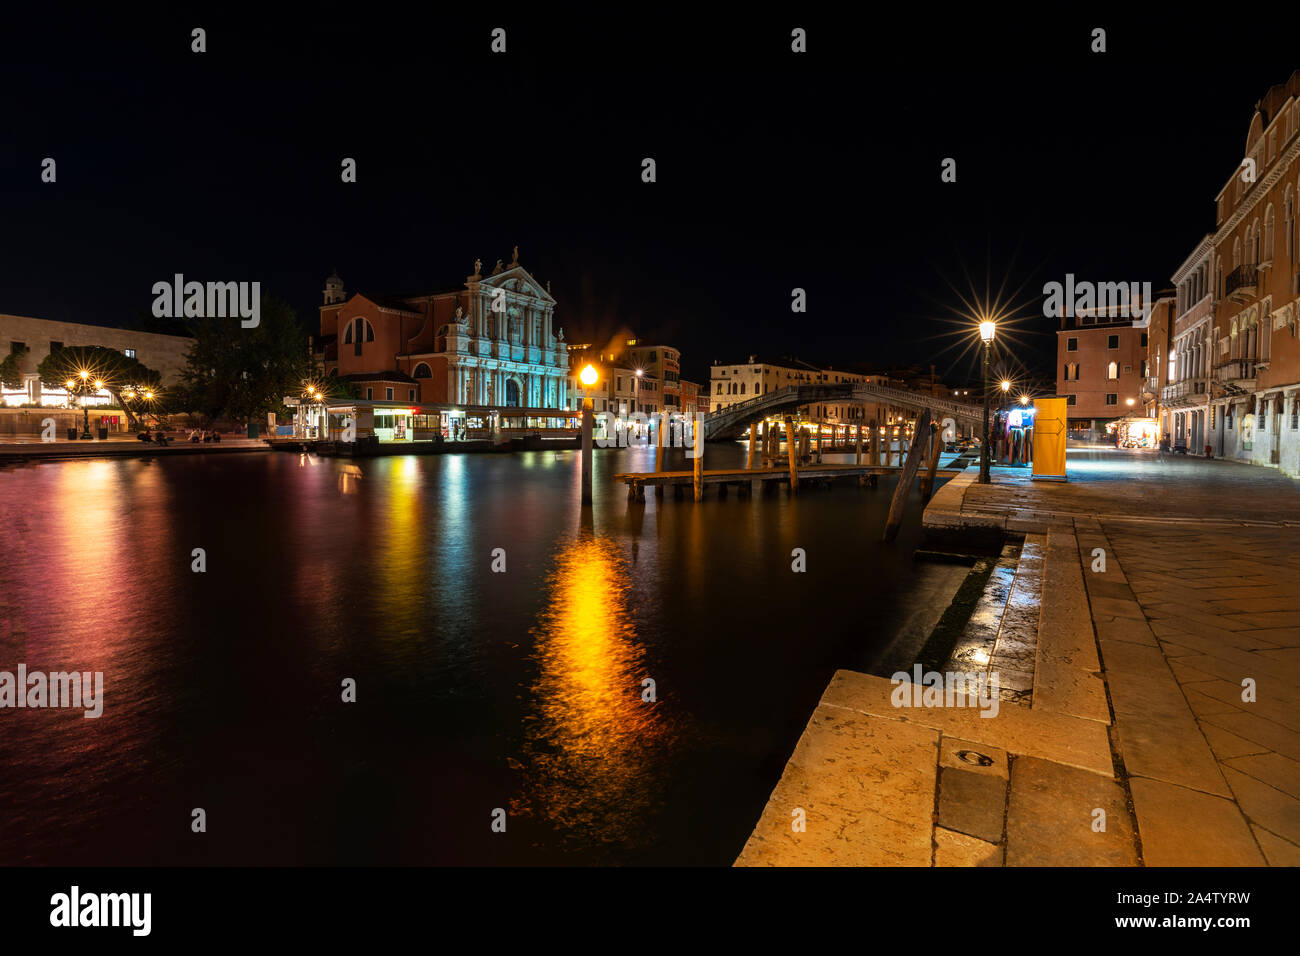 Canal Grande di notte, è una delle principali attrazioni turistiche di Venezia ed è luogo famoso in Europa.Venezia Italia. Foto Stock